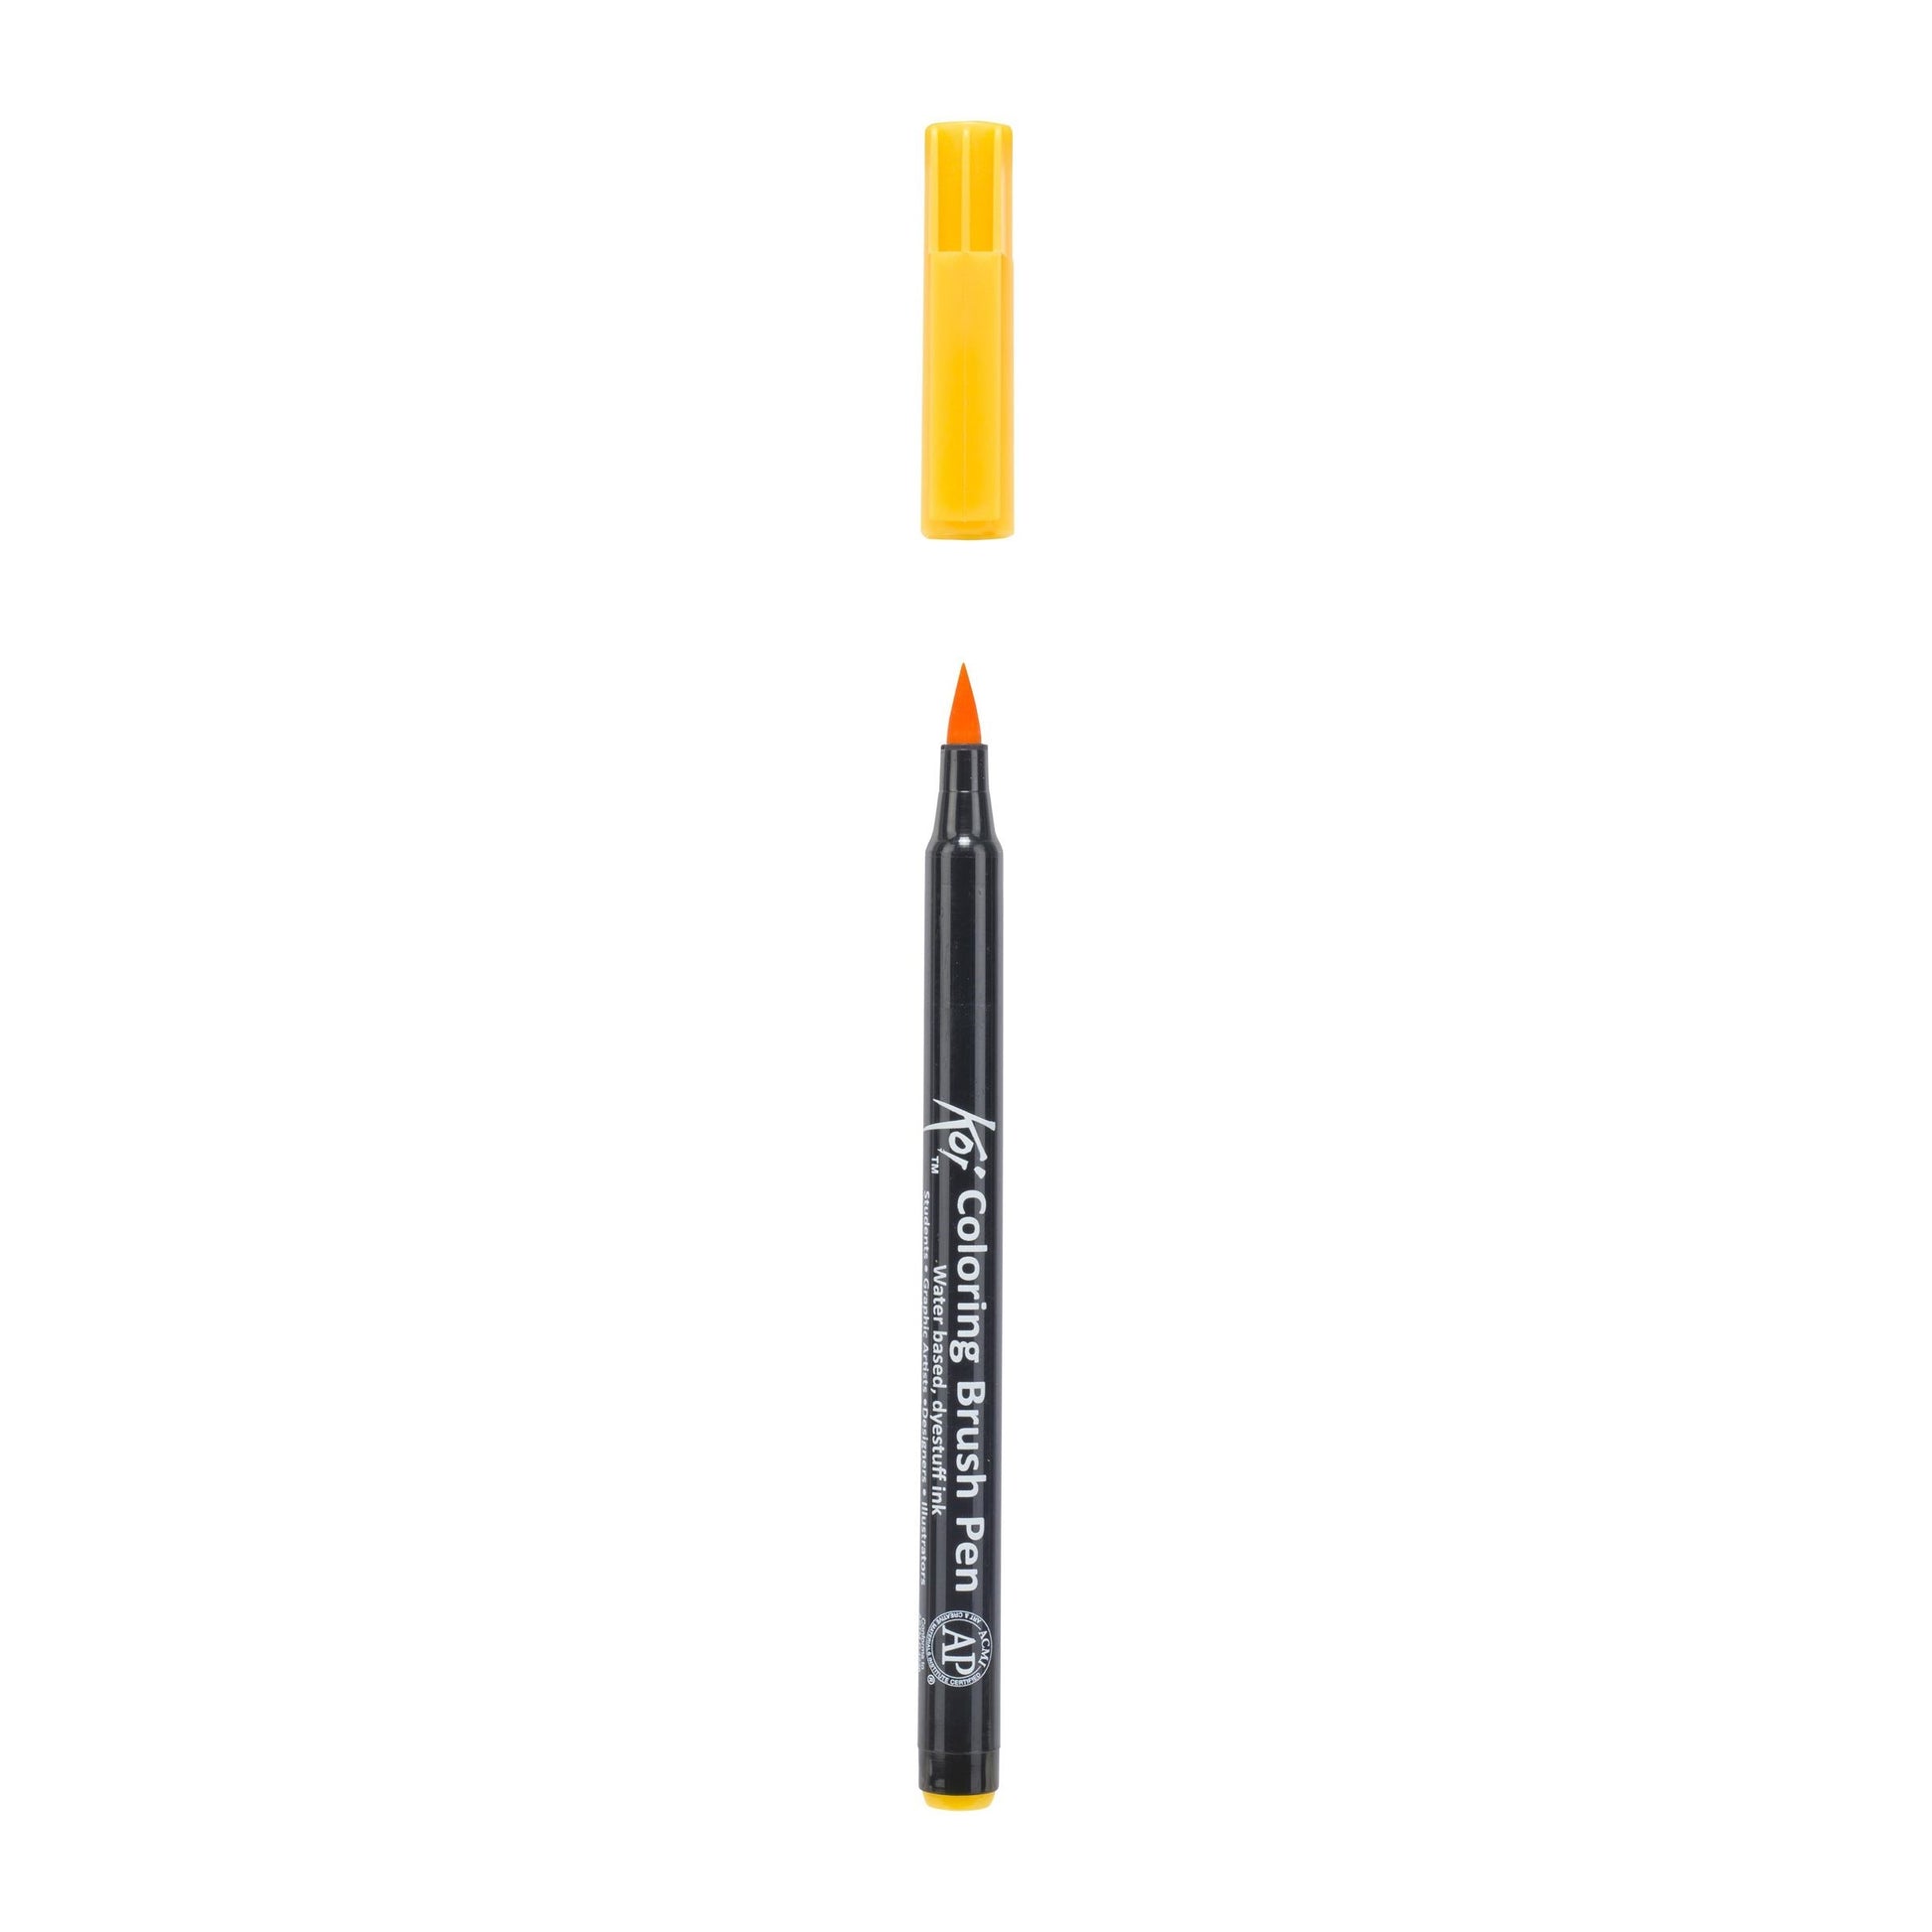 Koi Coloring Brush Pen deep yellow akvareltusch